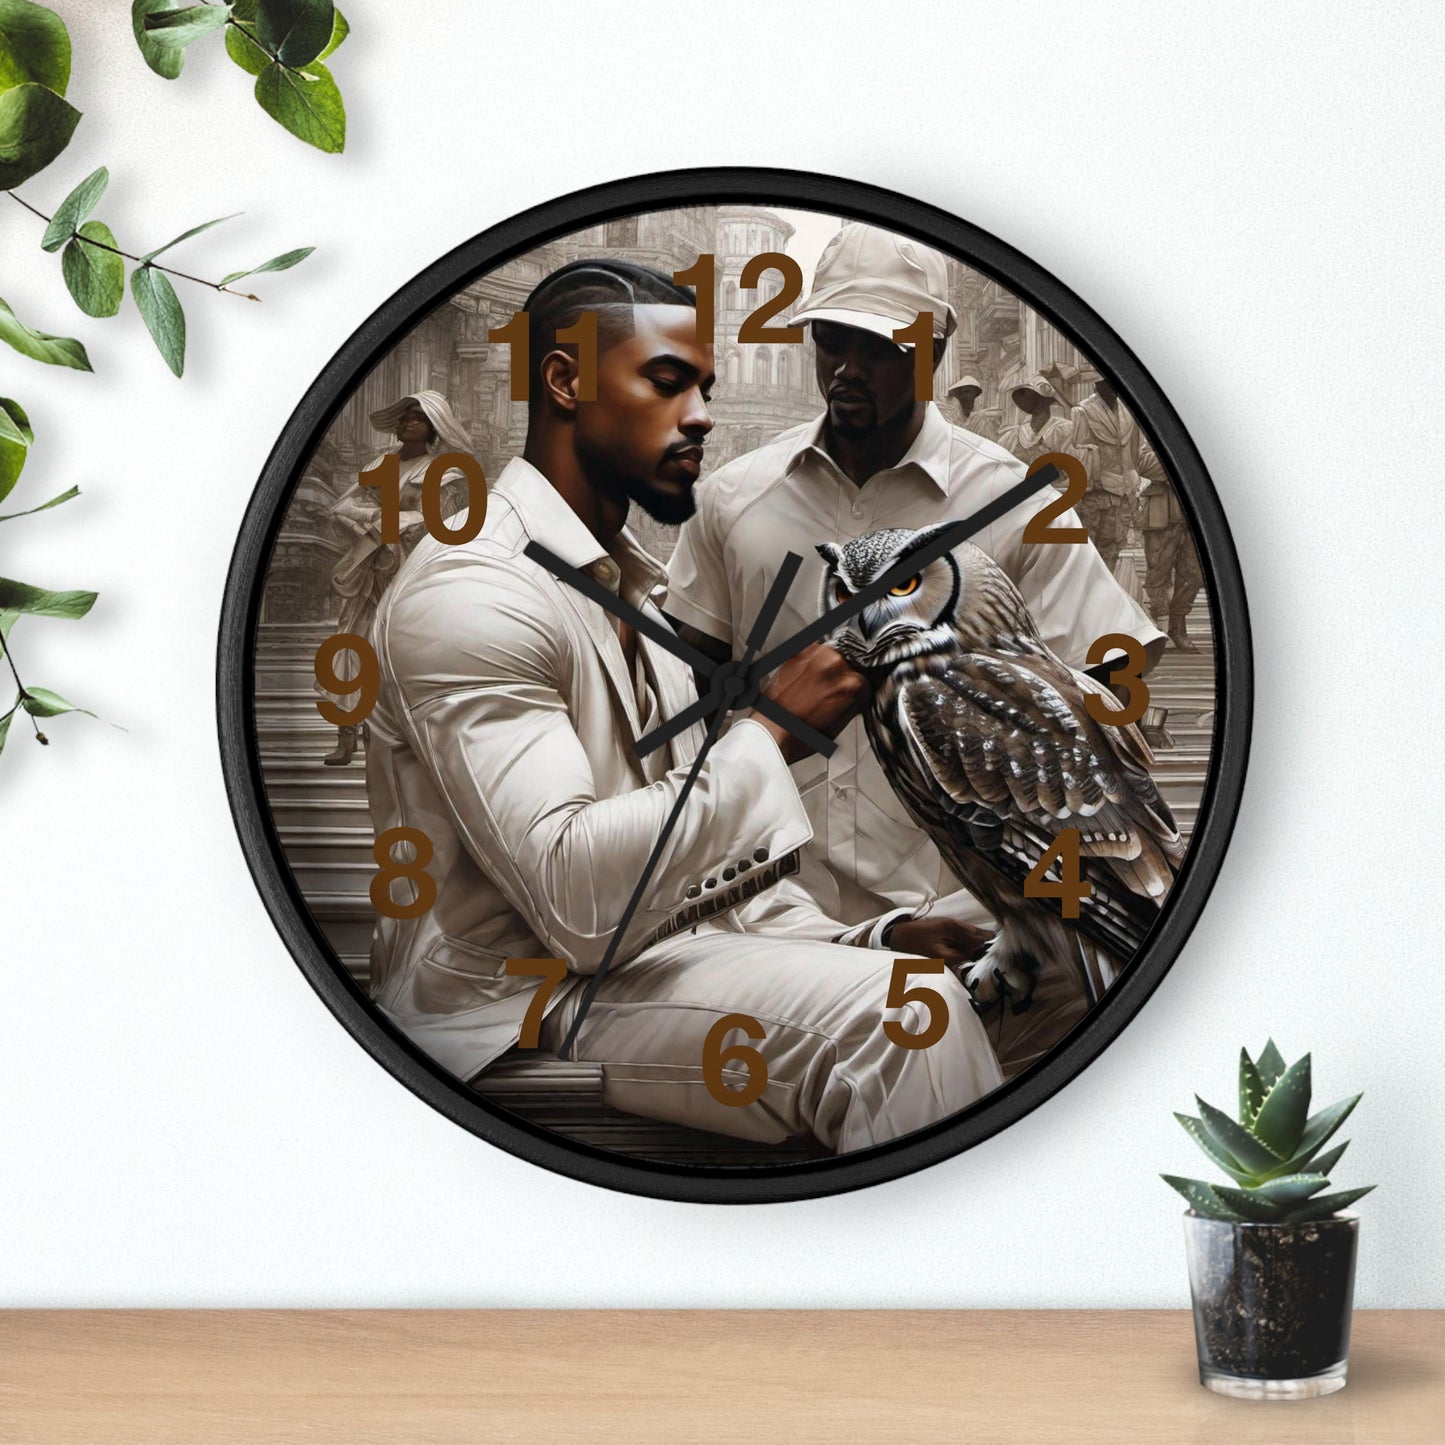 The Owl & Friend Wall Clock